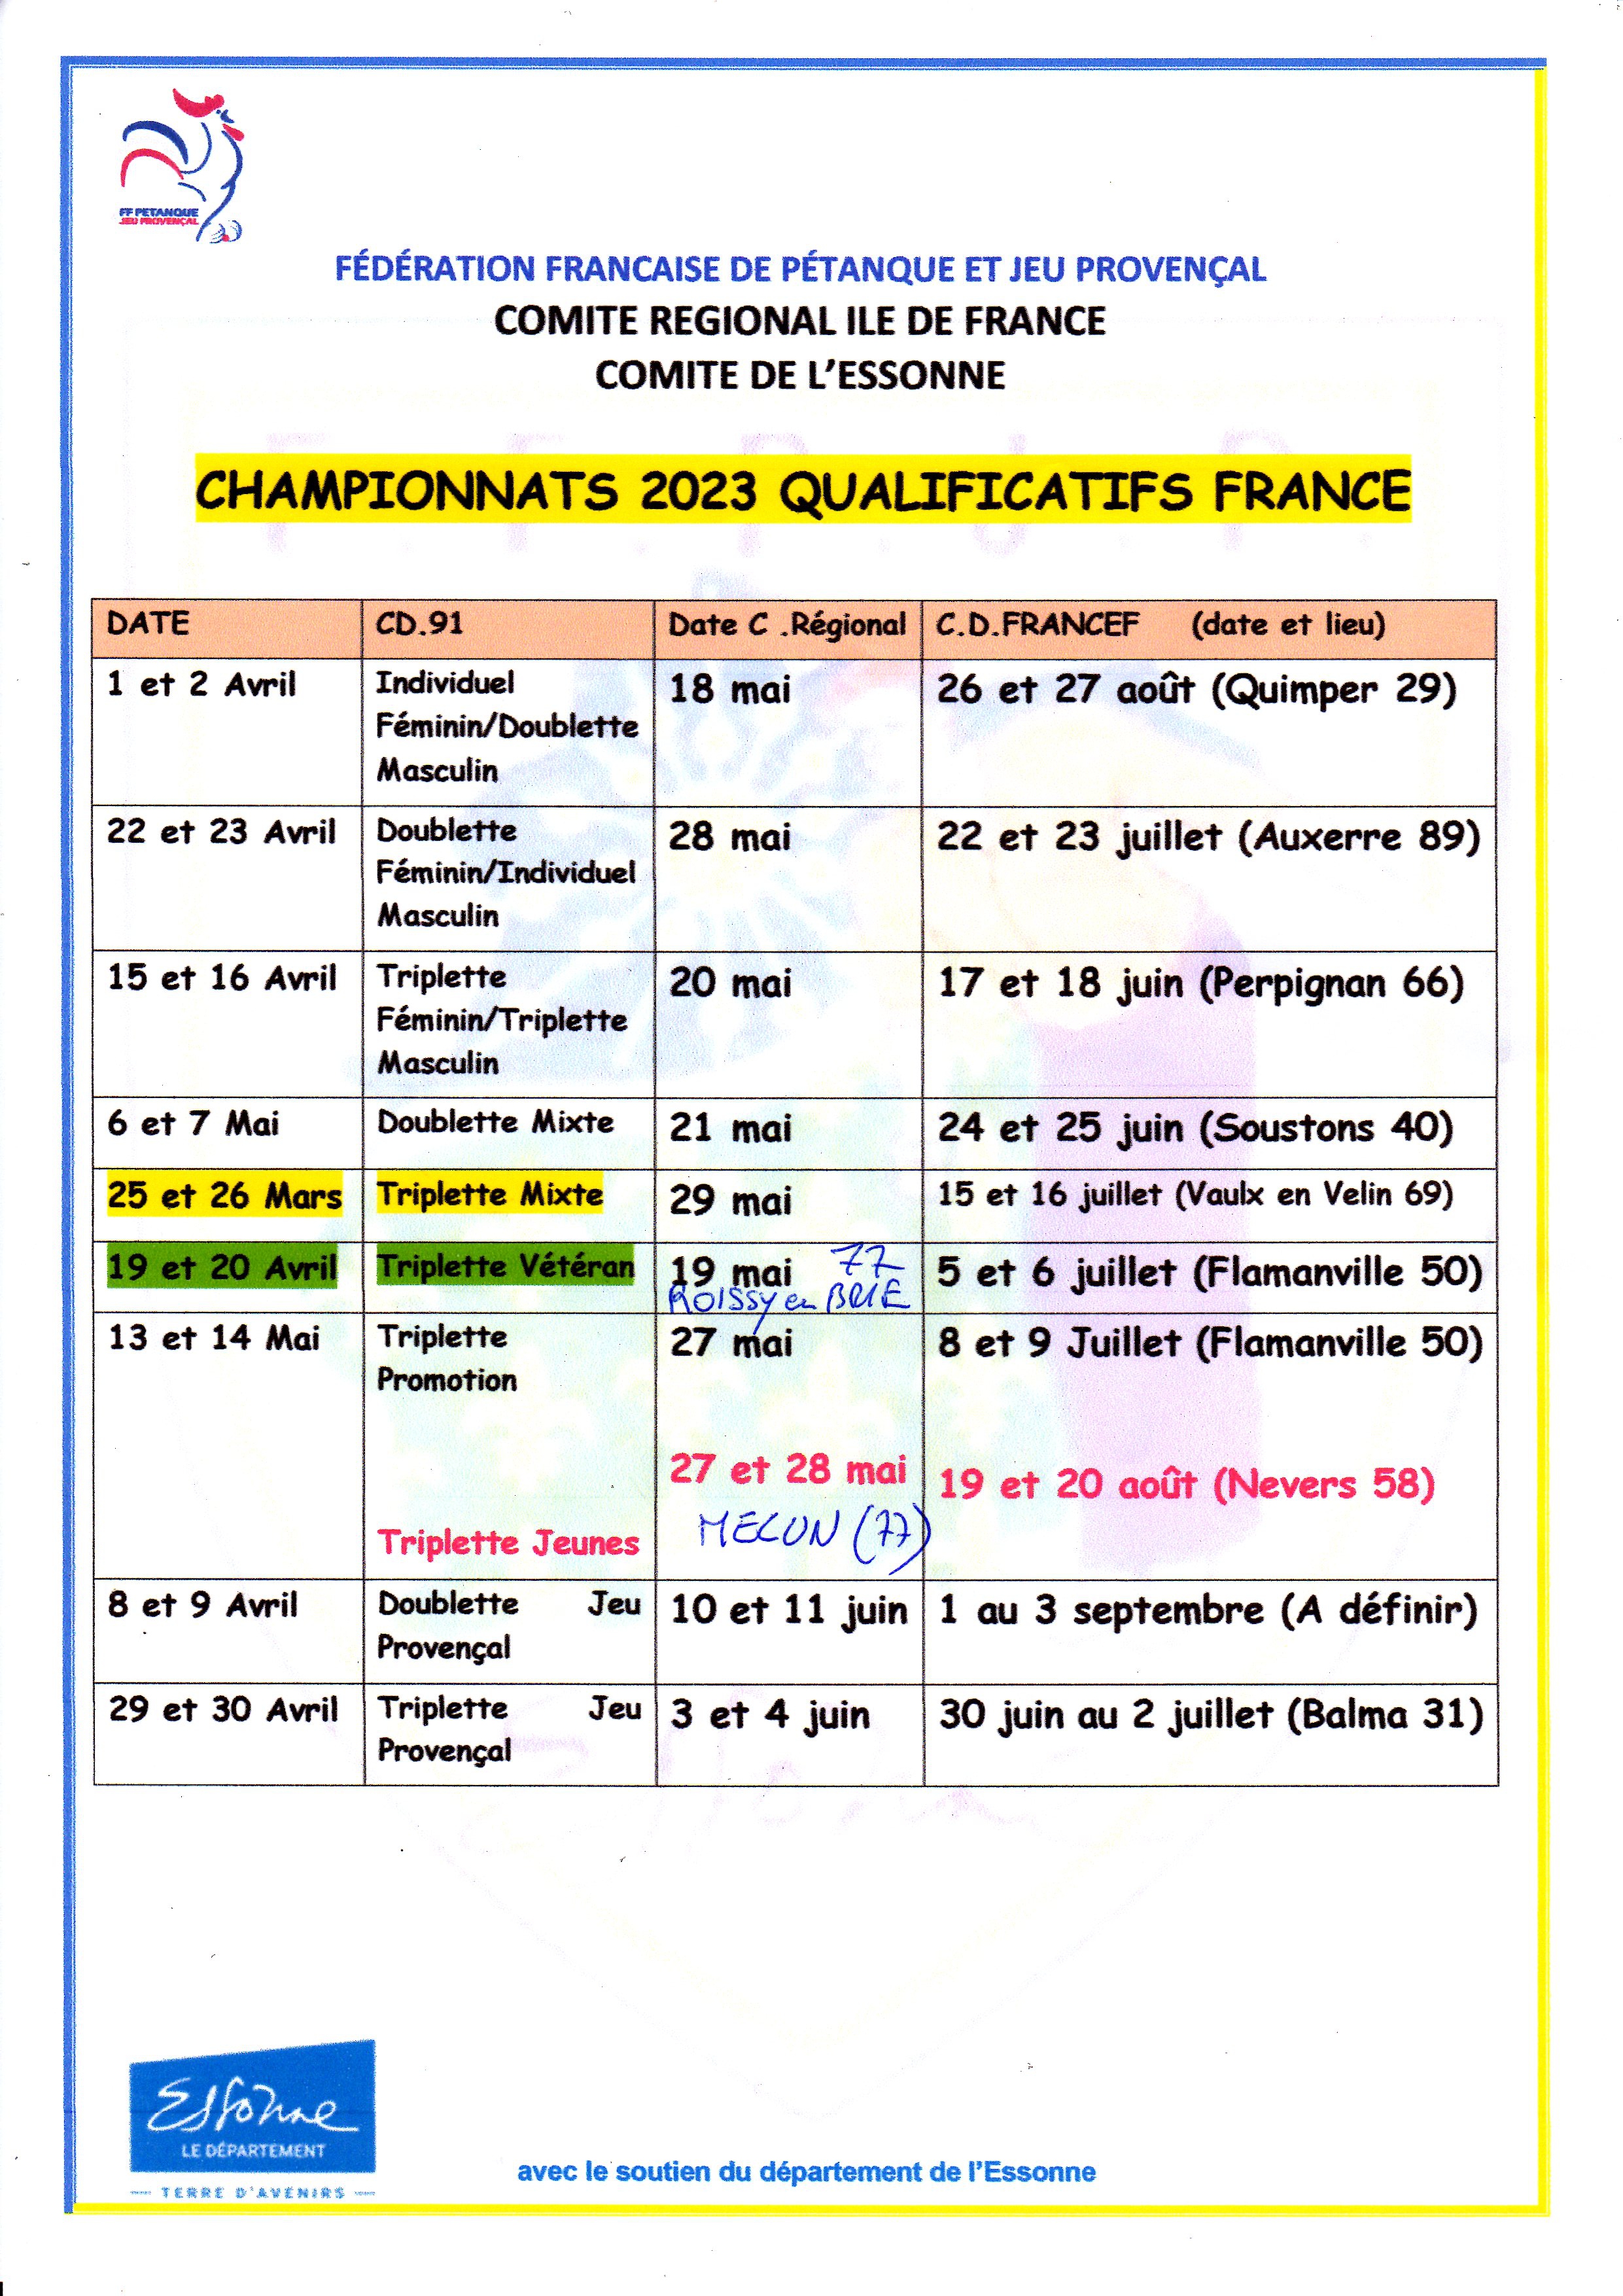 DATE DES CHAMPIONNATS QUALIFICATIFS 2023 ET FRANCE